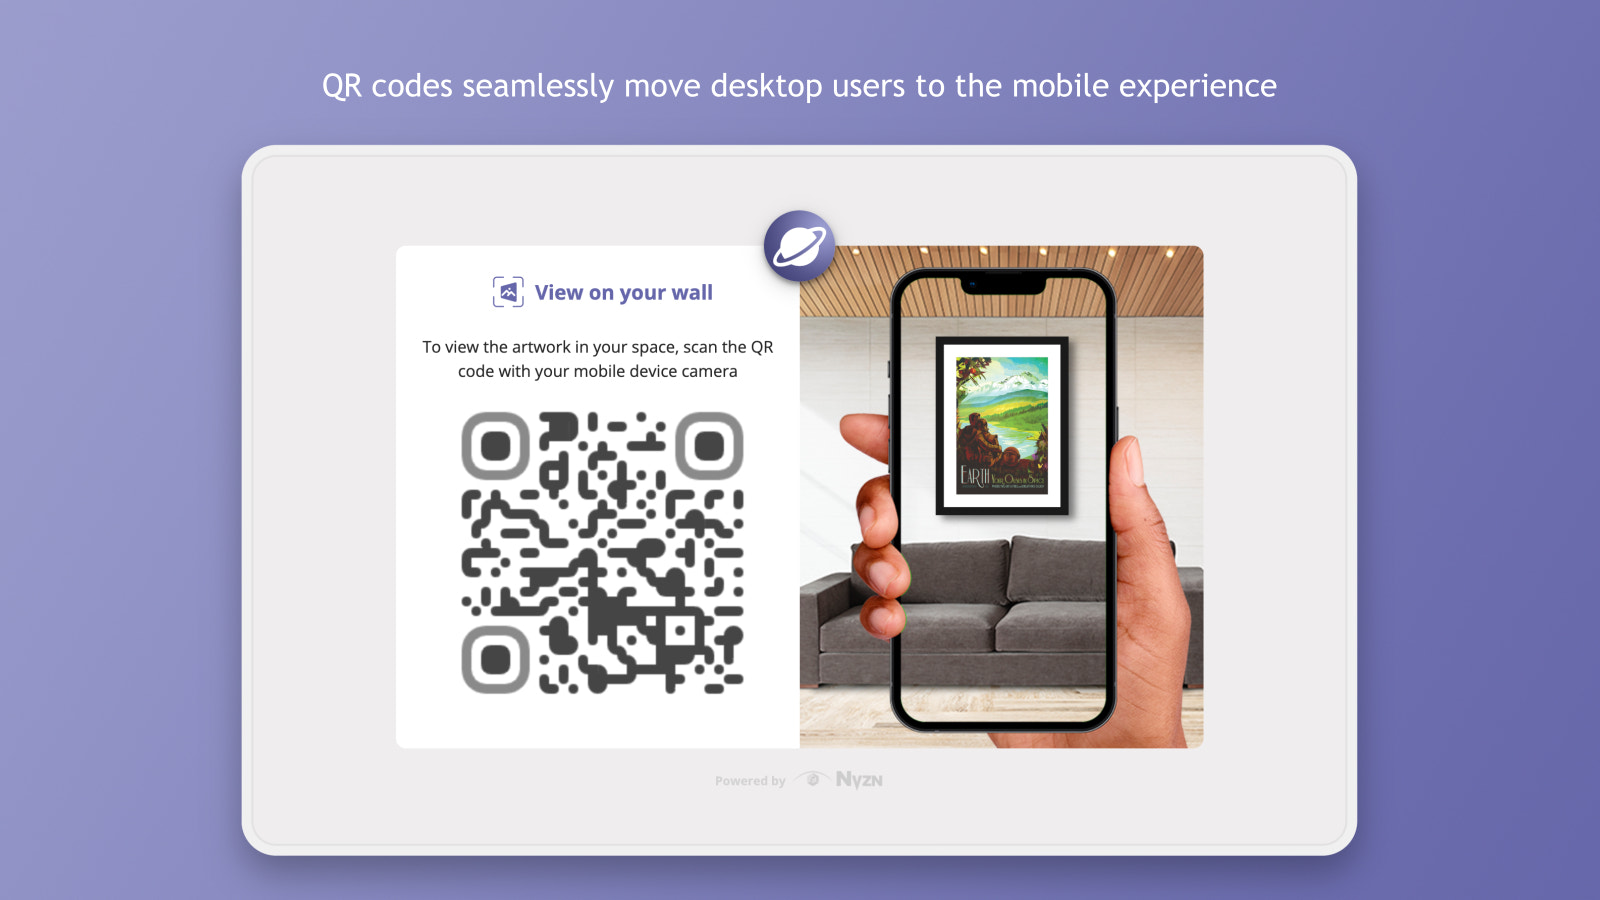 Les codes QR déplacent sans problème les utilisateurs de bureau vers l'expérience mobile